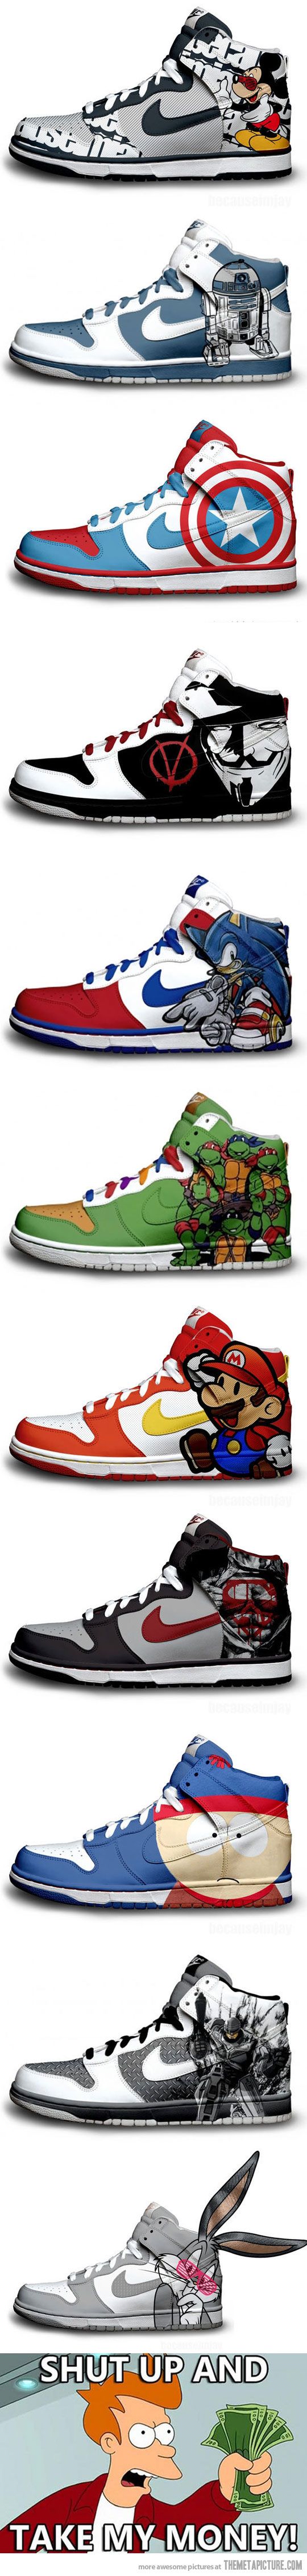 Geeky #Nike Sneakers...